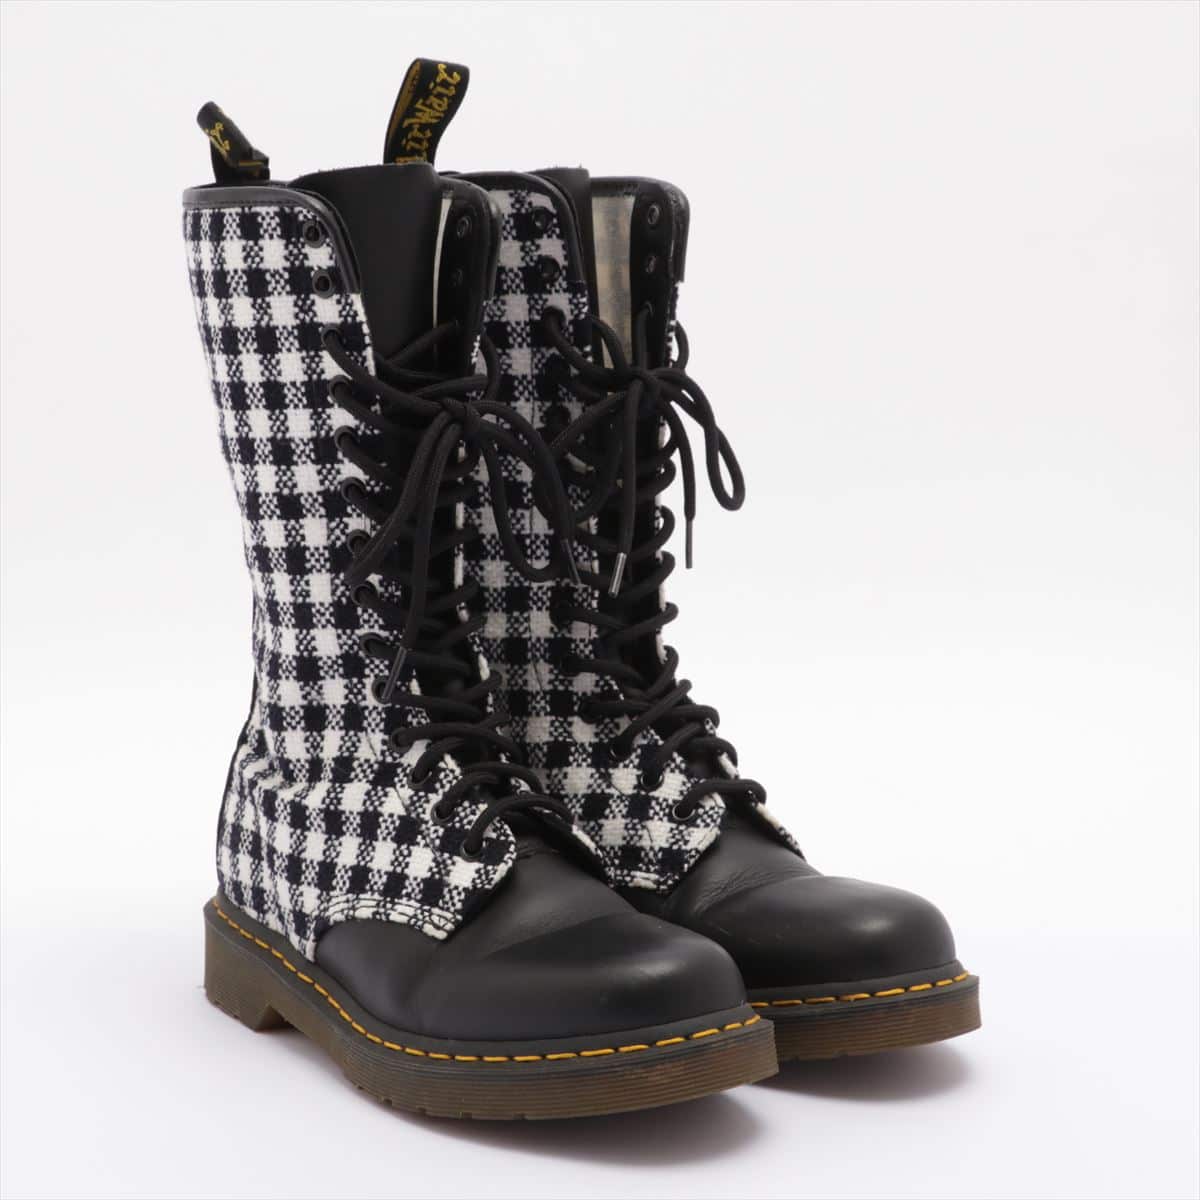 Dr. Martens Cotton & leather Long boots UK6 Ladies' Black × White 14 holes